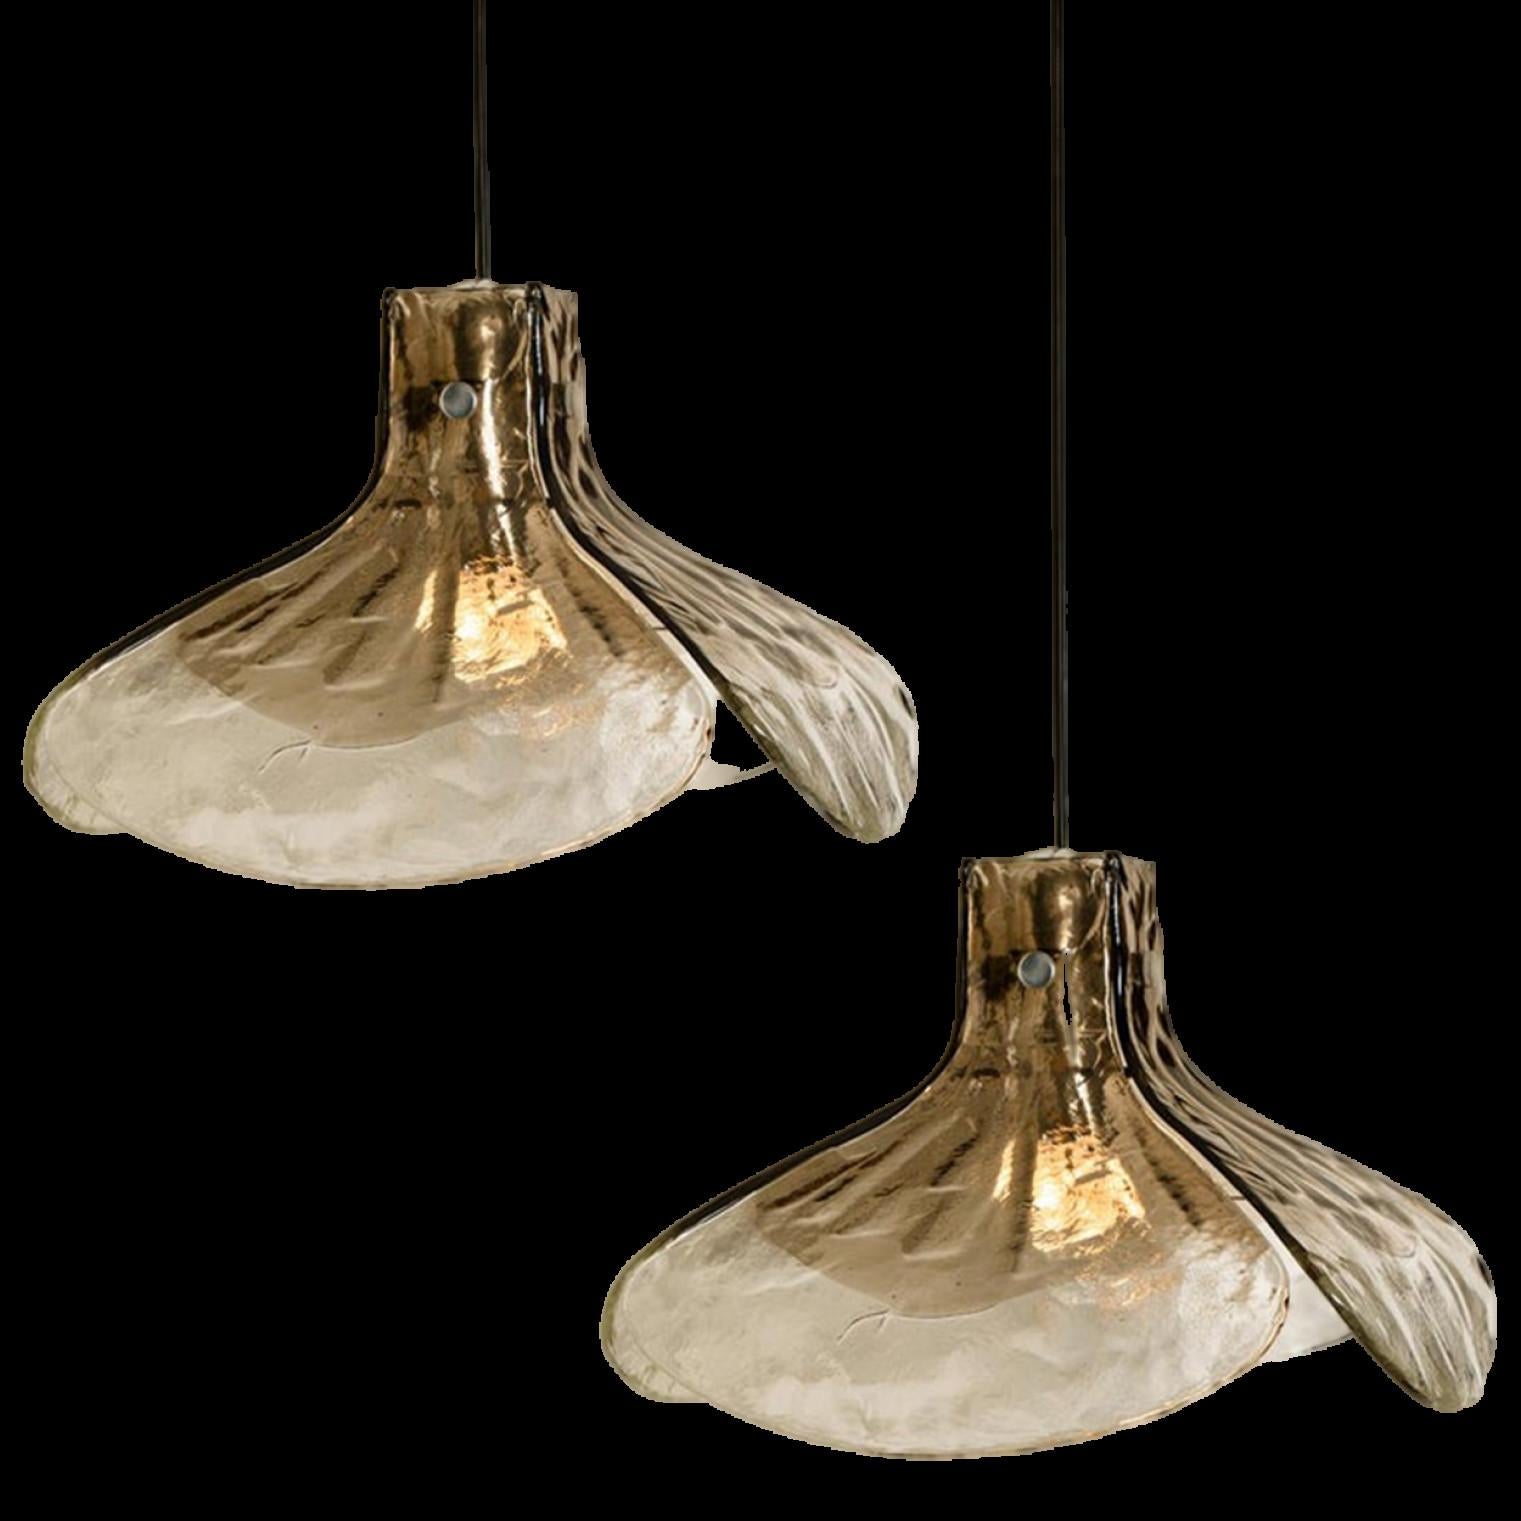 1 des 2 lampes suspendues, modèle LS185 par Carlo Nason pour Mazzega.
Quatre feuilles cristallines et brunes fumées composent cette belle pièce artisanale en verre épais de Murano.

Mesures : H 16.93